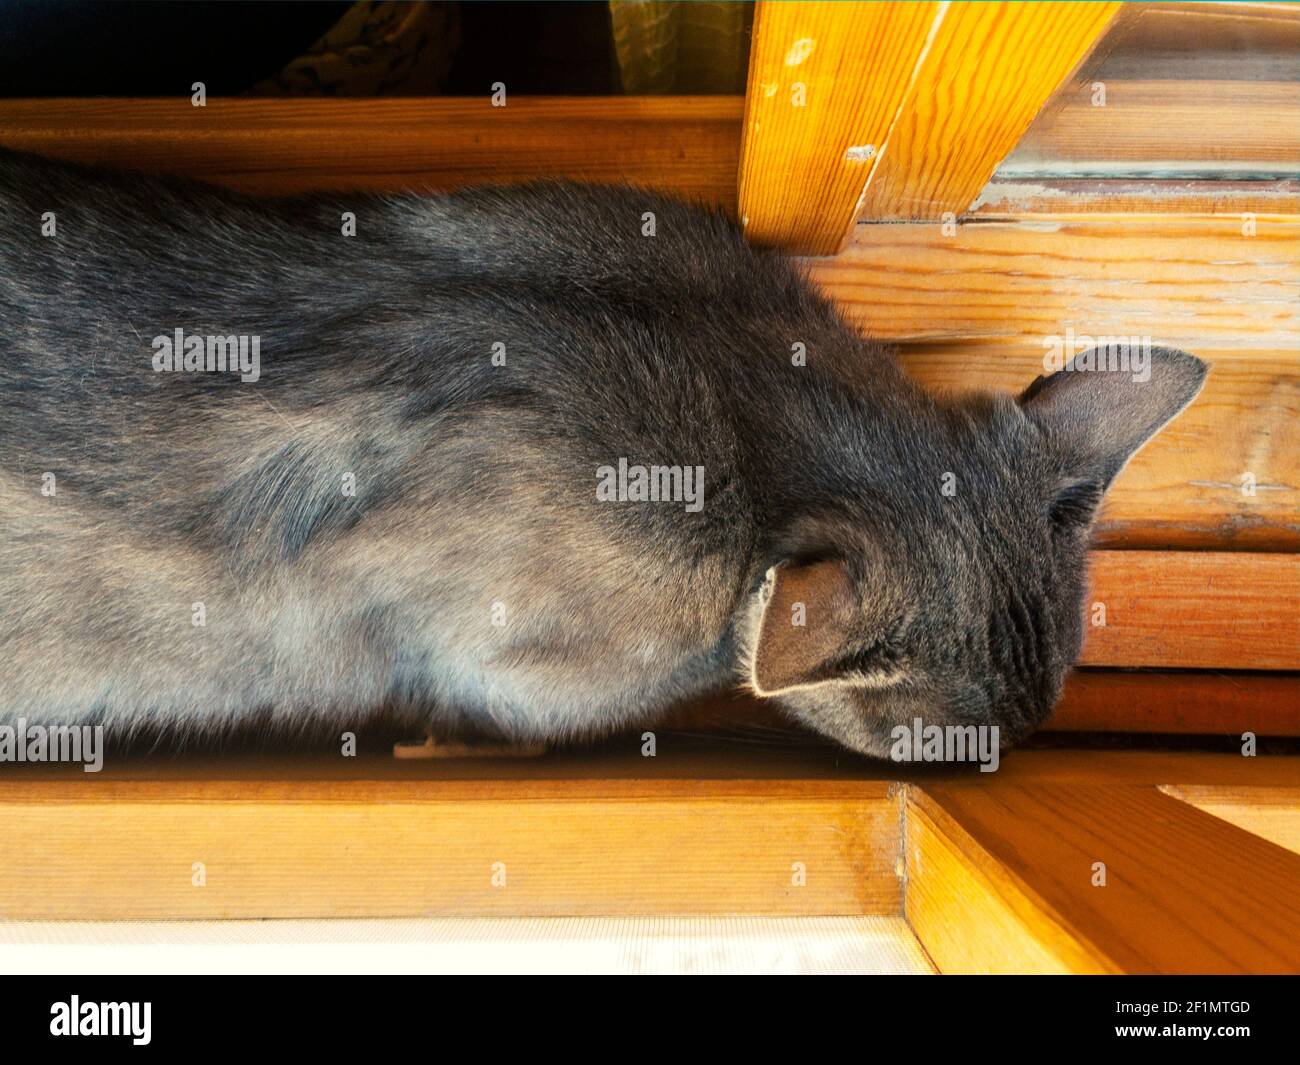 Vue de dessus d'un chat gris endormi à l'intérieur d'un rebord de fenêtre en bois par une journée ensoleillée. Banque D'Images